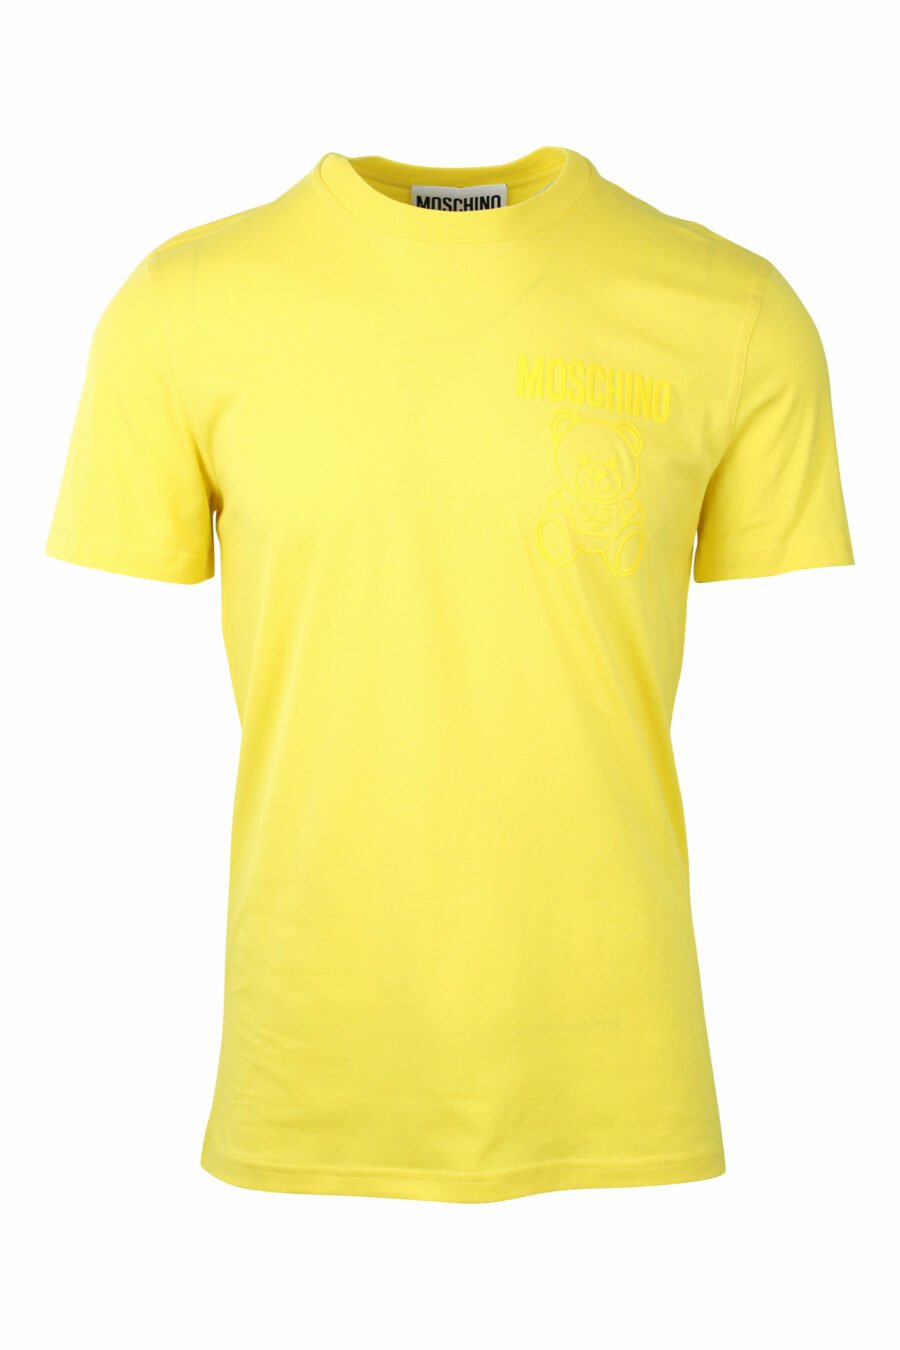 T-shirt jaune avec ours monochrome minilogue - IMG 1412